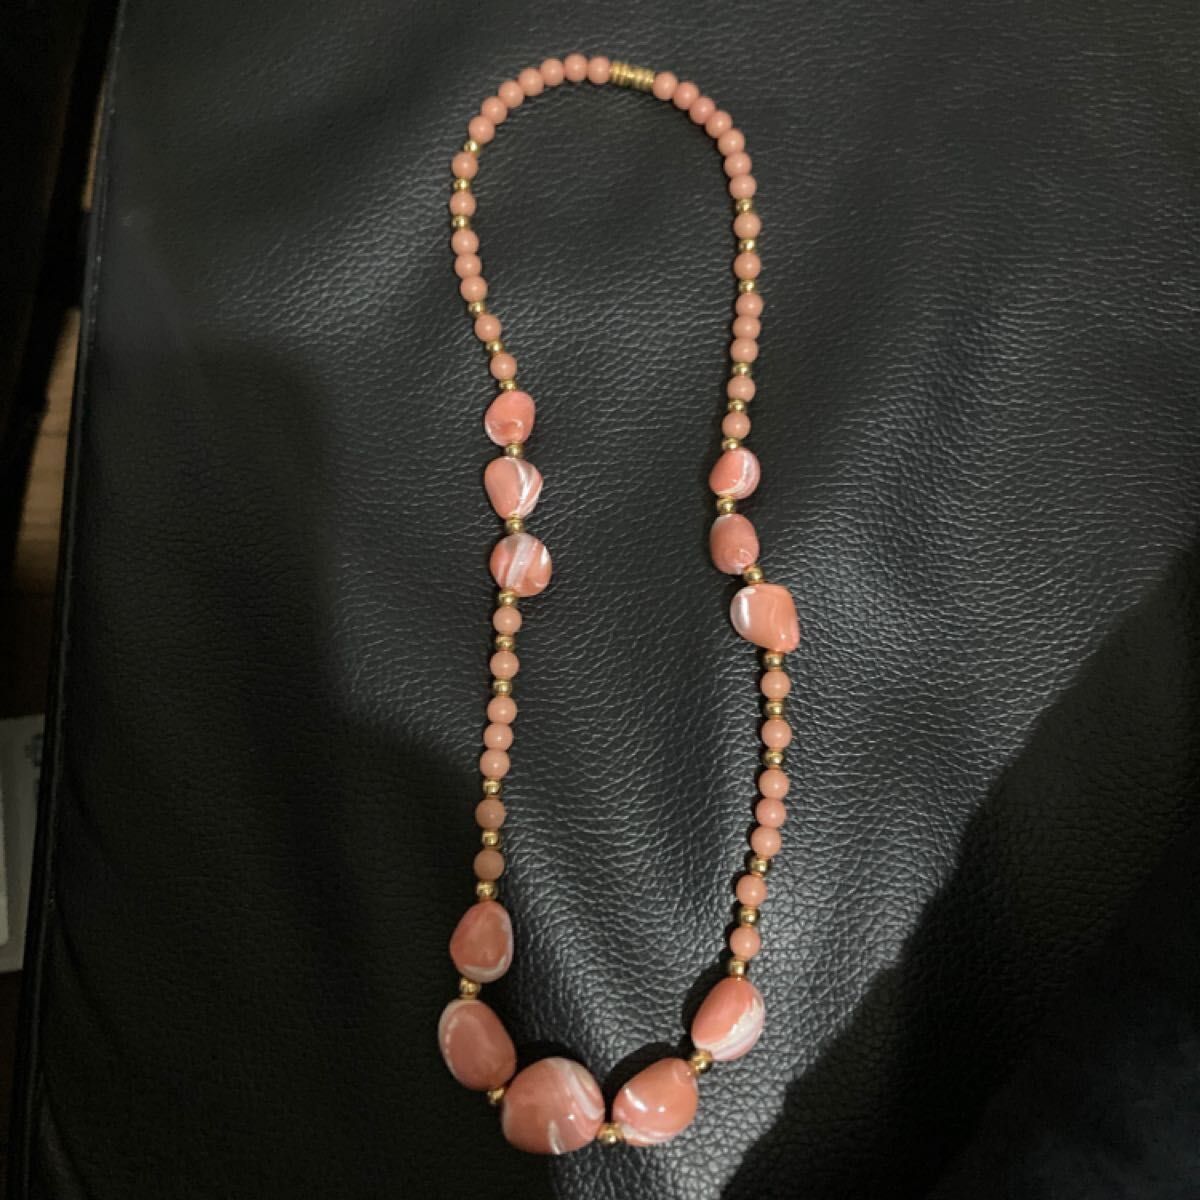 新品未使用品 ネックレス ブローチ 天然貝 入学式 卒業式 ピンク色 アクセサリー 珊瑚 天然石 ペンダント パール 真珠 